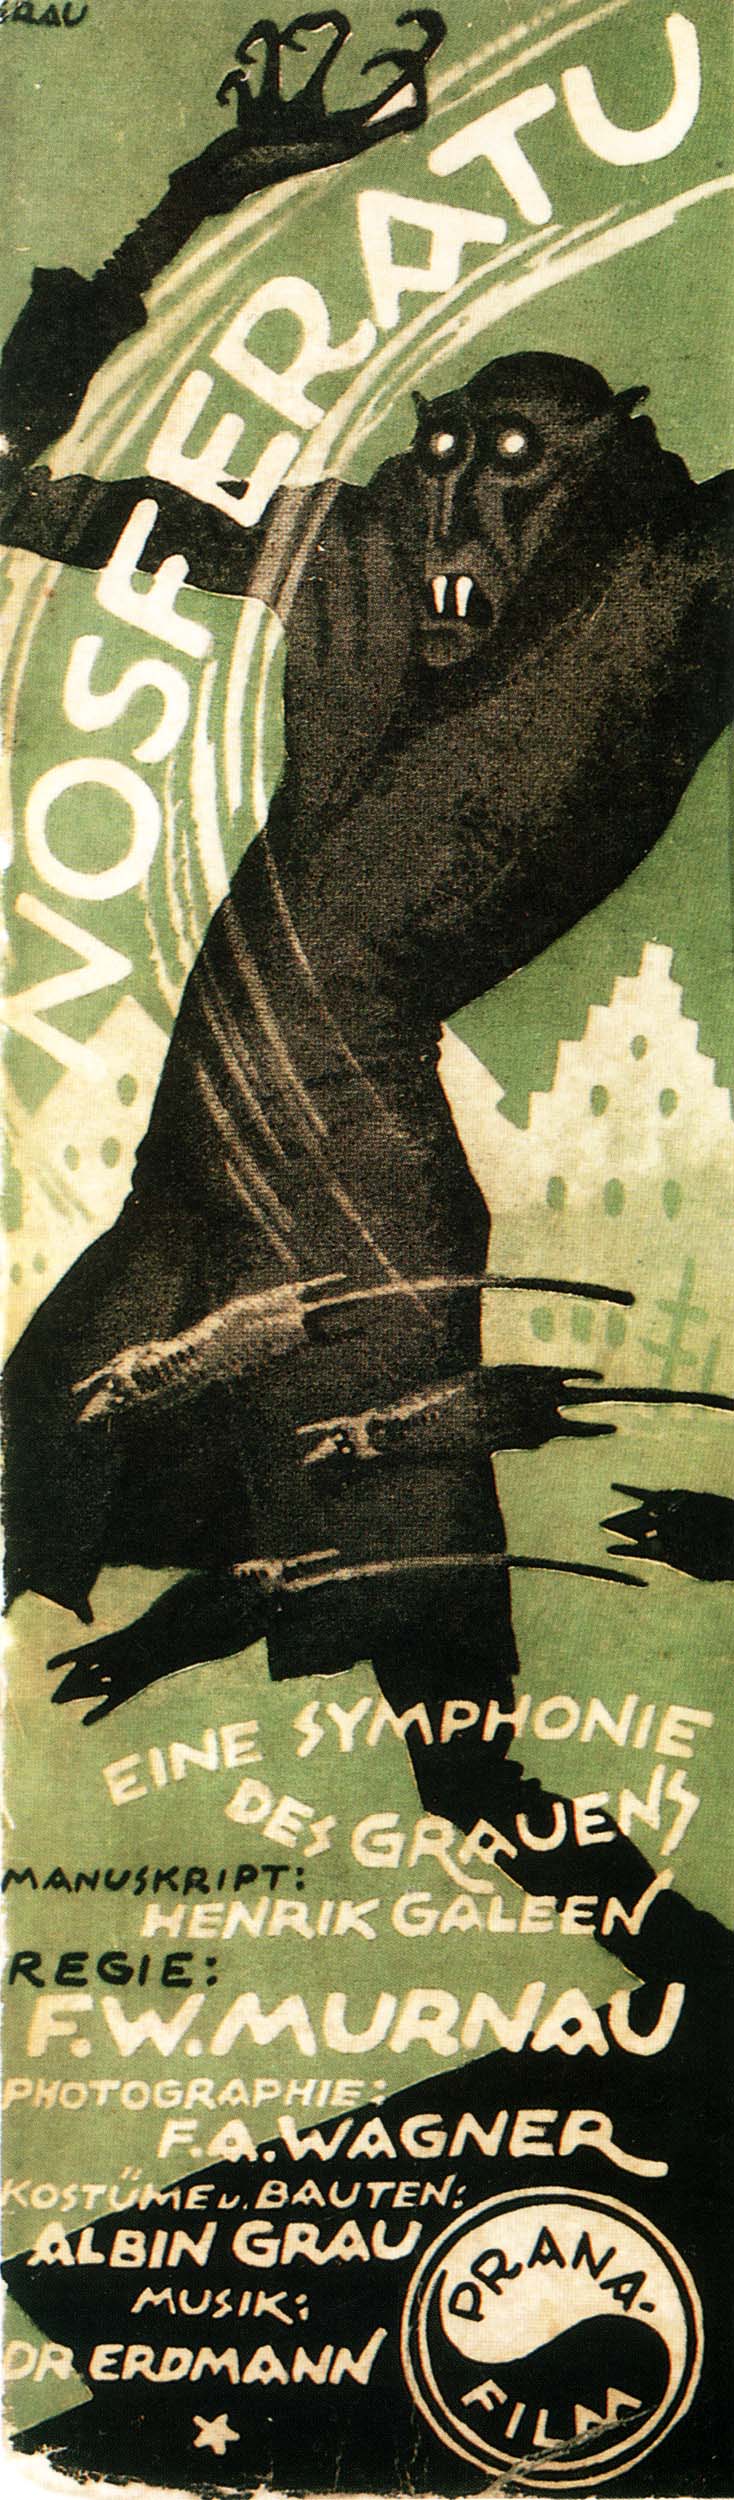 Постер к фильму Носферату: Симфония ужаса (1922)